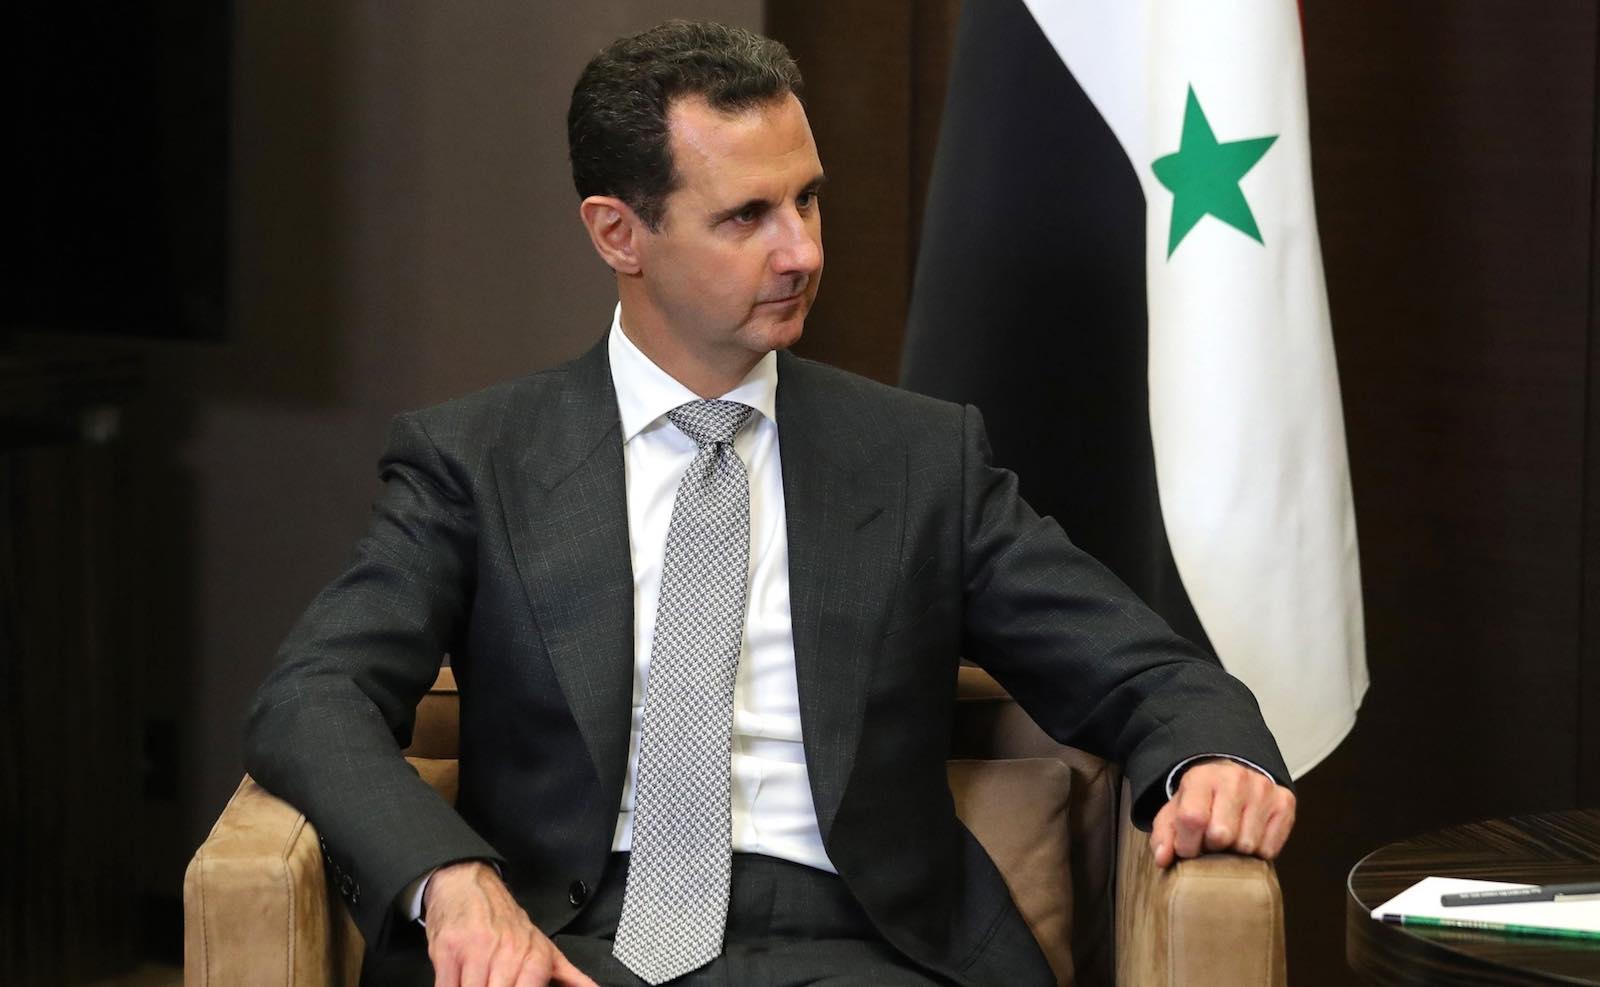 La normalizzazione con Assad e la chimera della stabilità. L’intervento di Fullerton e Netjes